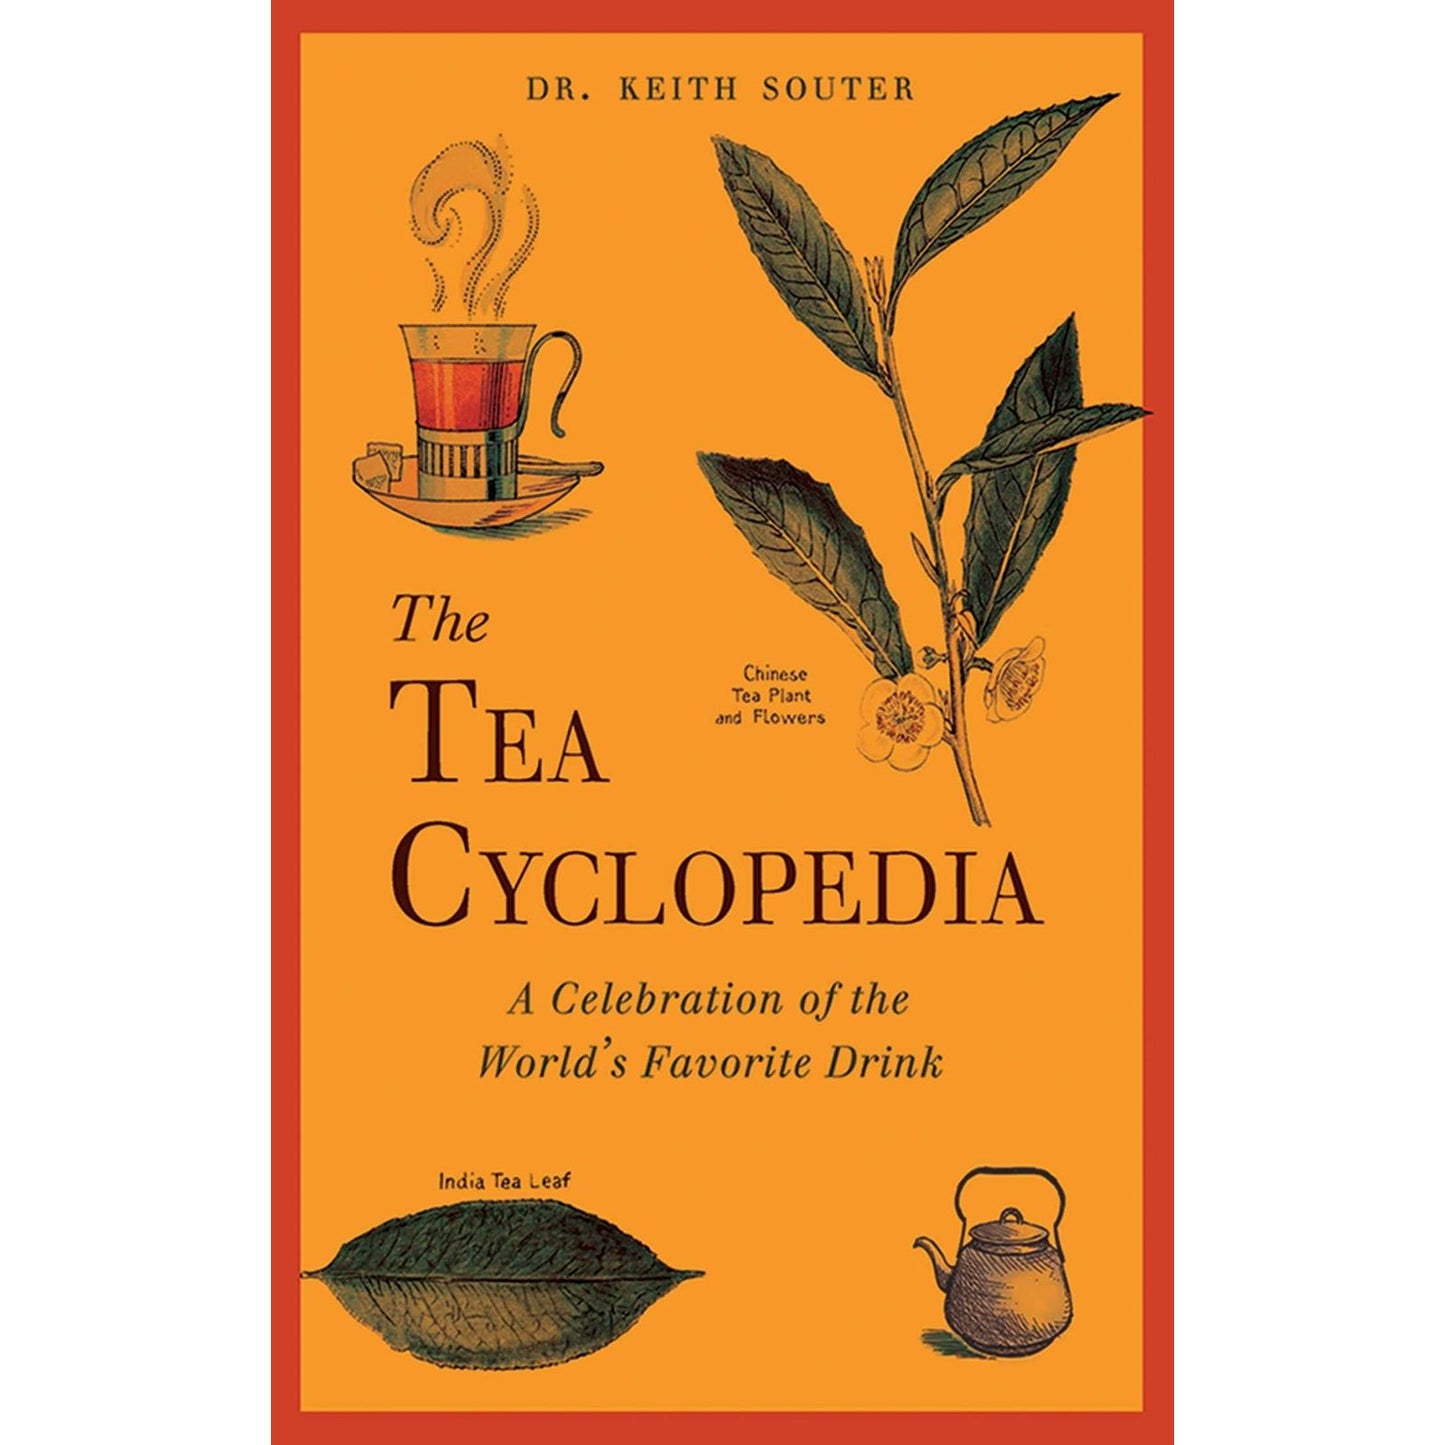 The Tea Cyclopedia (Keith Souter)